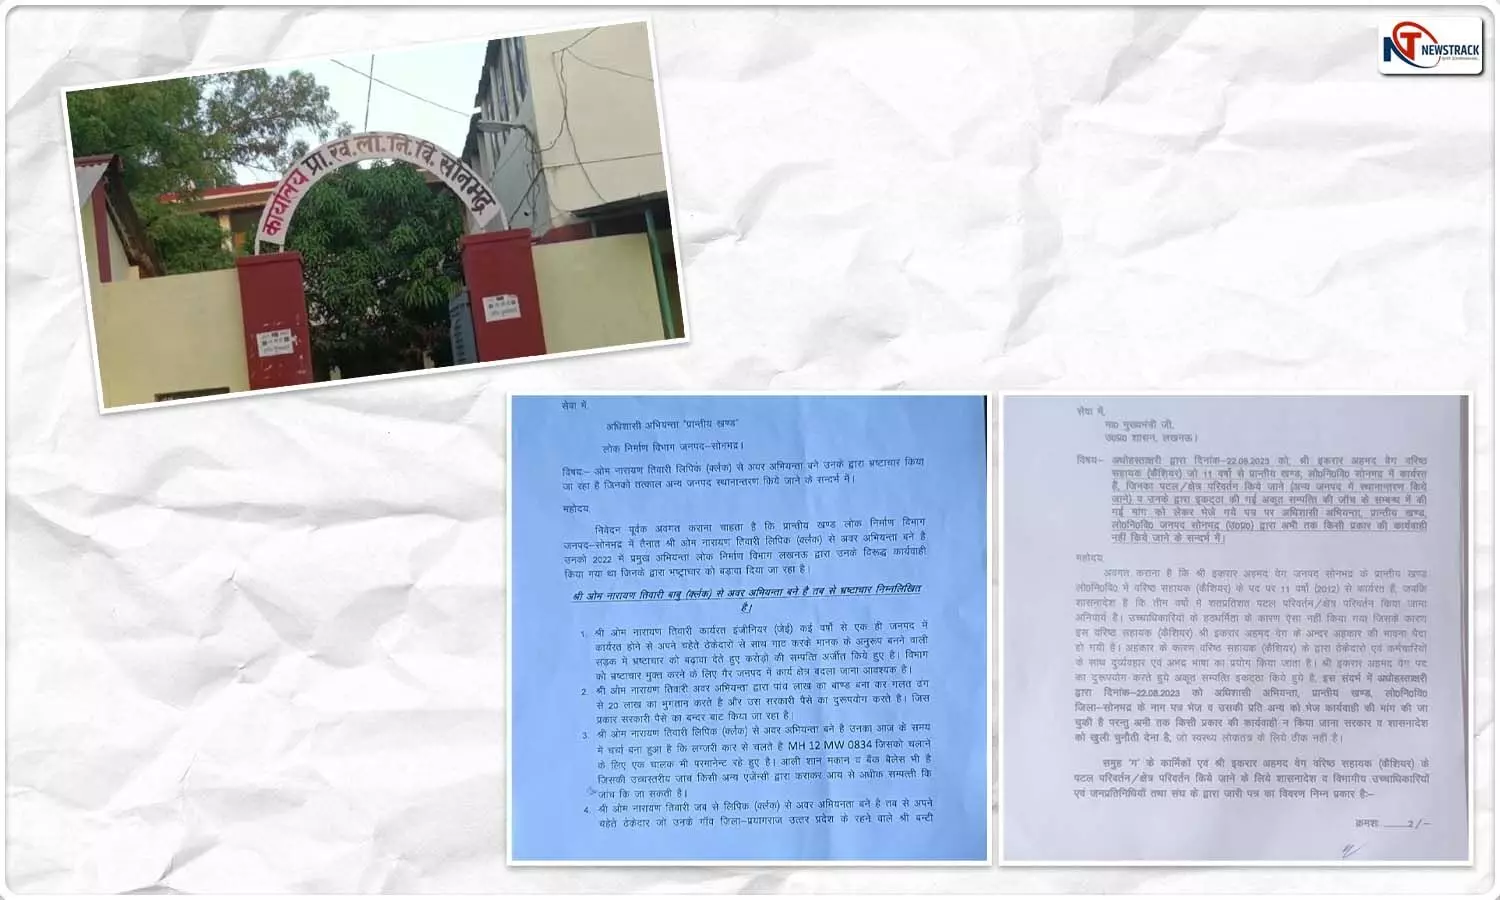 Sonbhadra News: प्रांतीय खंड में इकरार राज, चहेती फर्मों पर ओम की मेहरबानी, पीडब्ल्यूडी मंत्री सहित कई को भेजे गए पत्र ने मचाई खलबली